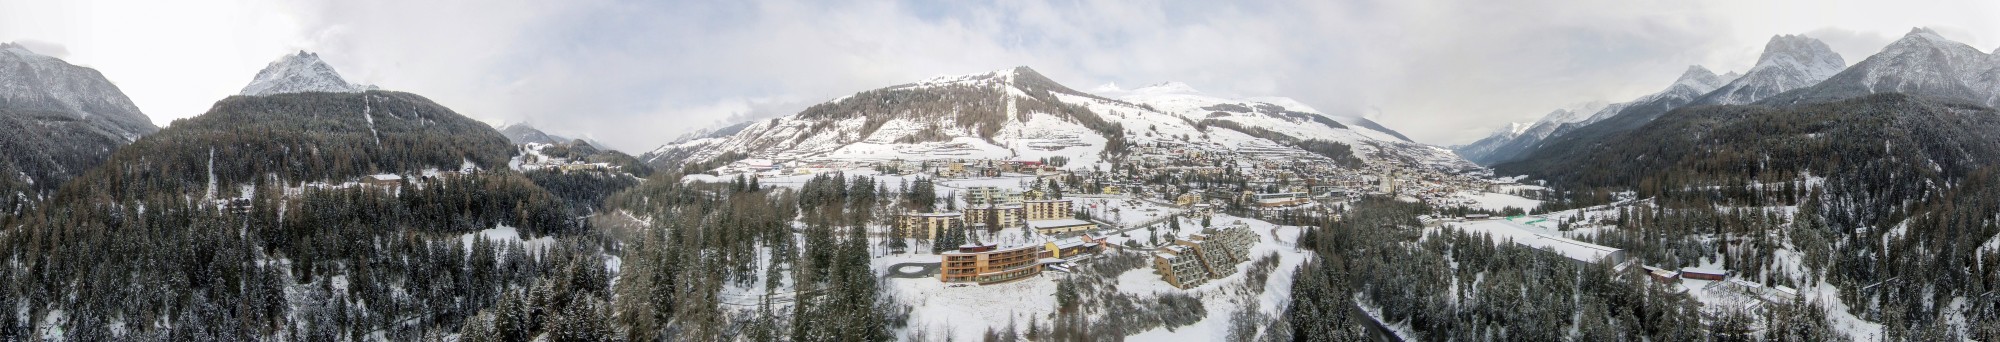 2015-02-25 10-40-44 - Switzerland Kanton Graubünden Scuol QC 360°